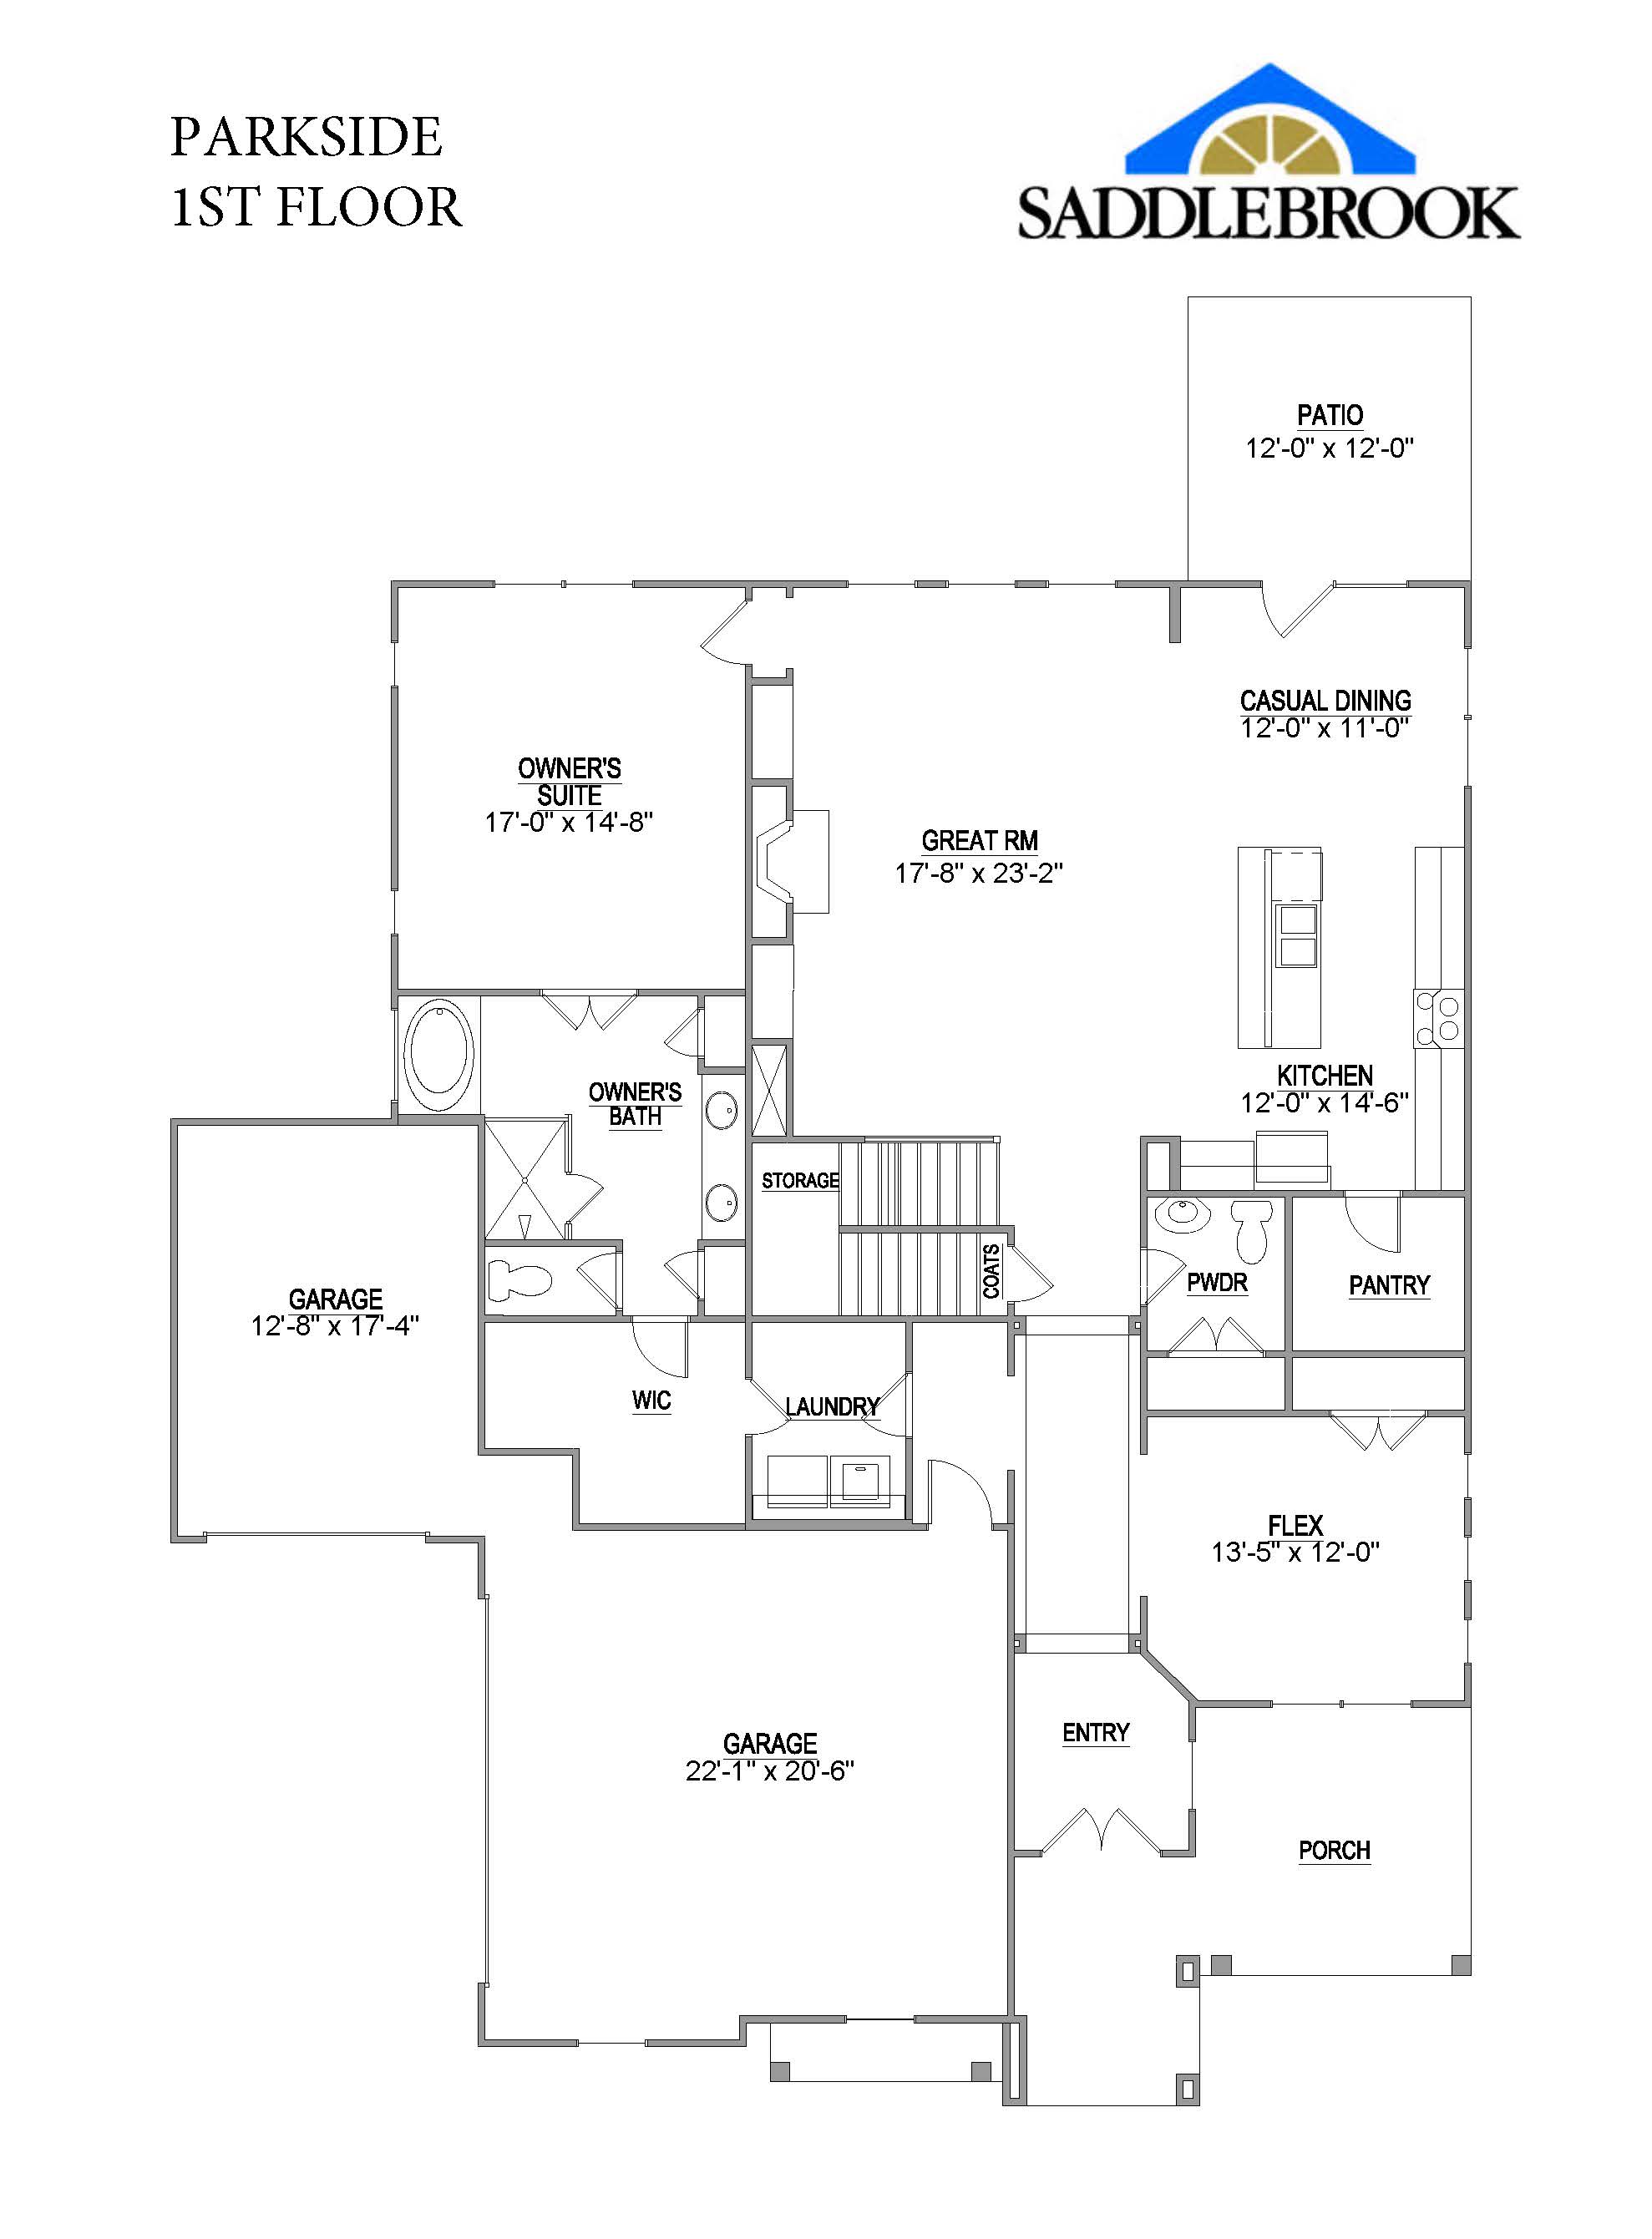 Saddlebrook Properties Parkside 2D Floor Plan